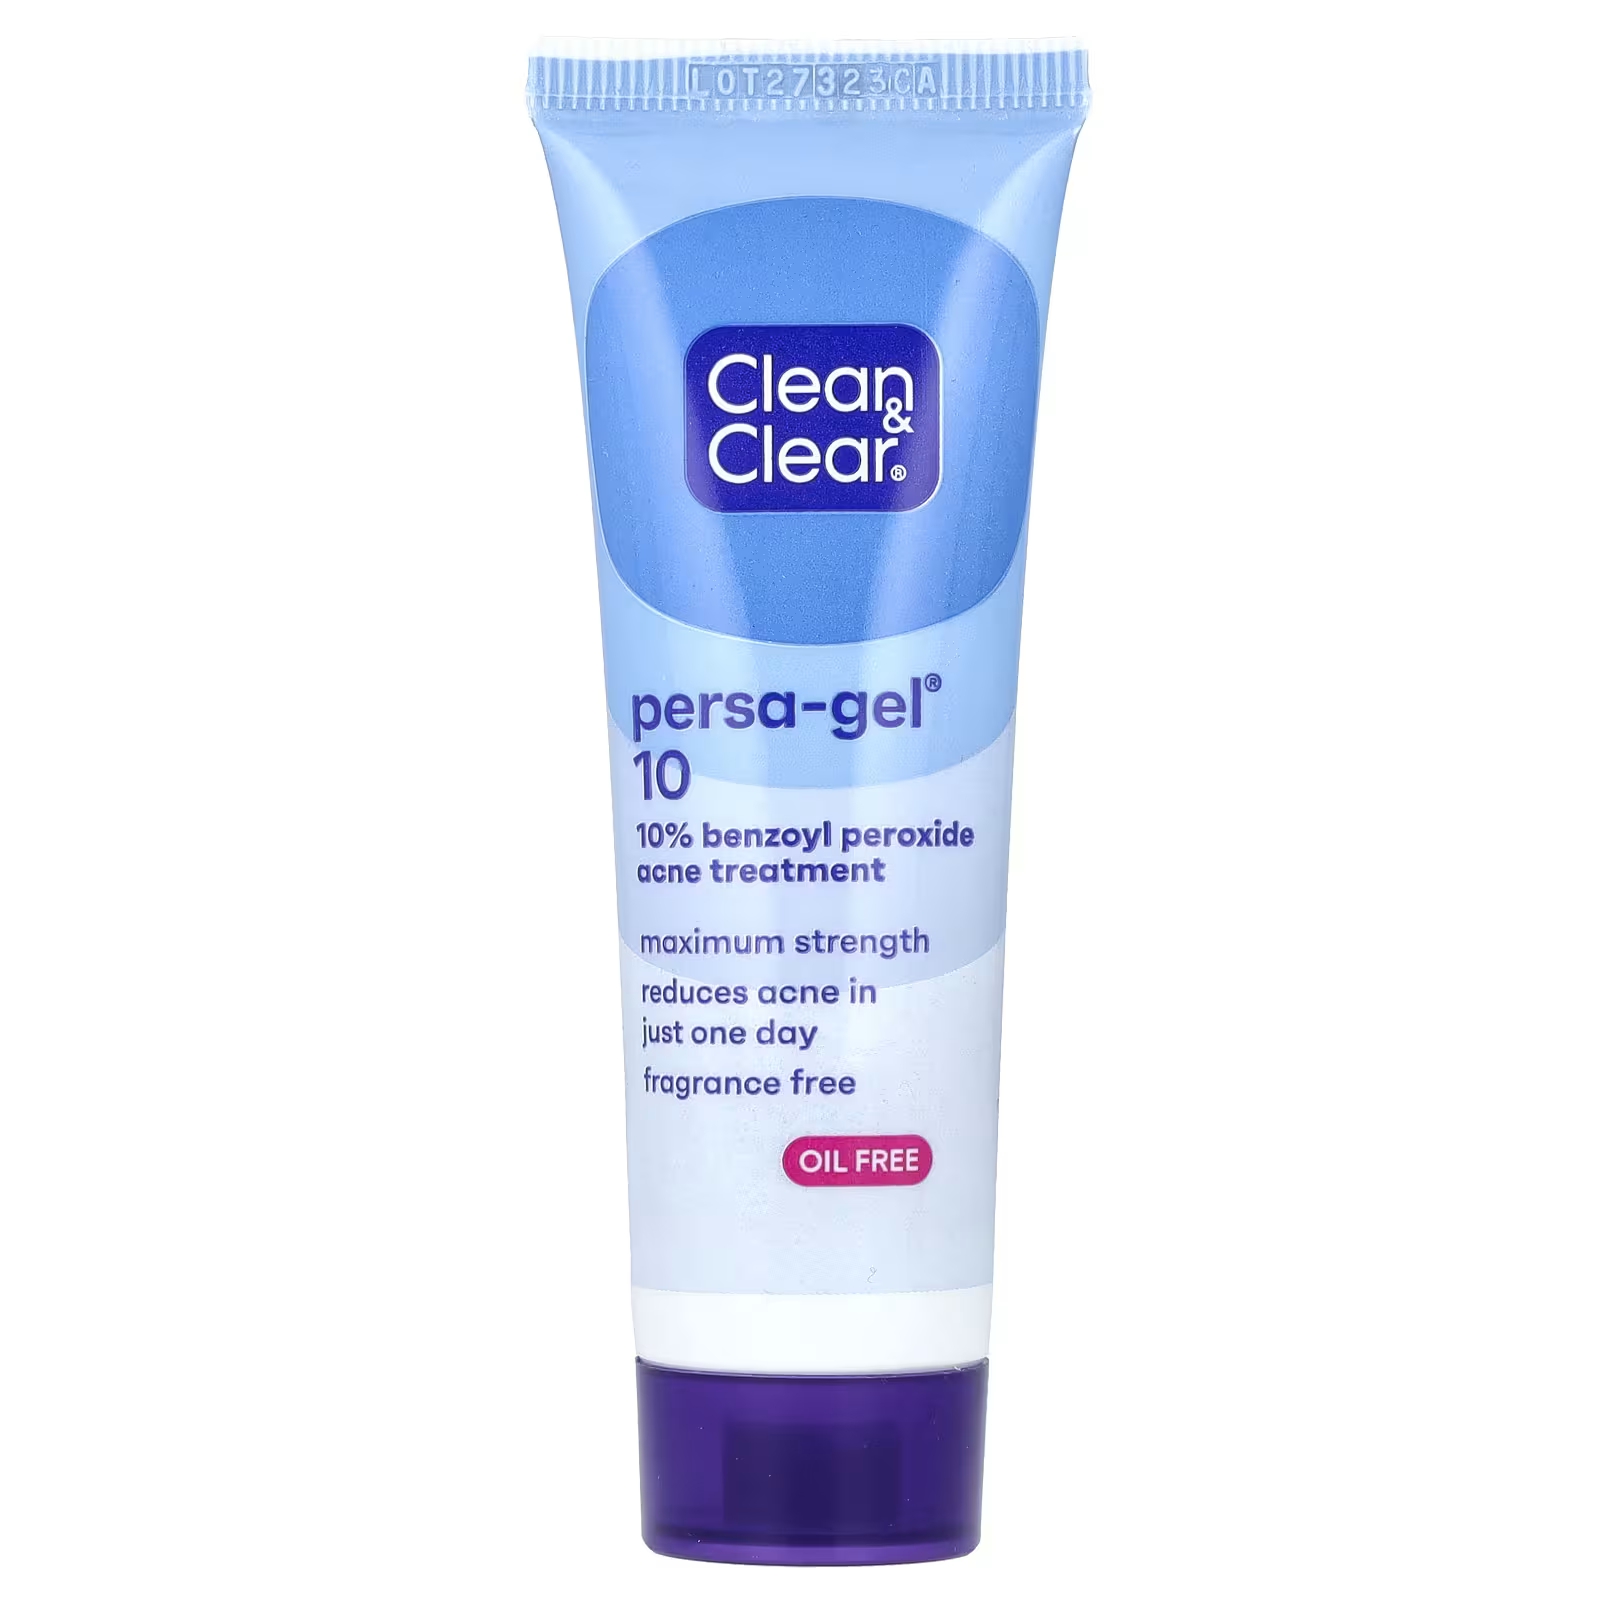 Clean & Clear Persa-Gel 10 максимальная сила 1 унц. (28 г) panoxyl крем для умывания от угрей ежедневный контроль с 4% перекисью бензоила 6 унций 170 г